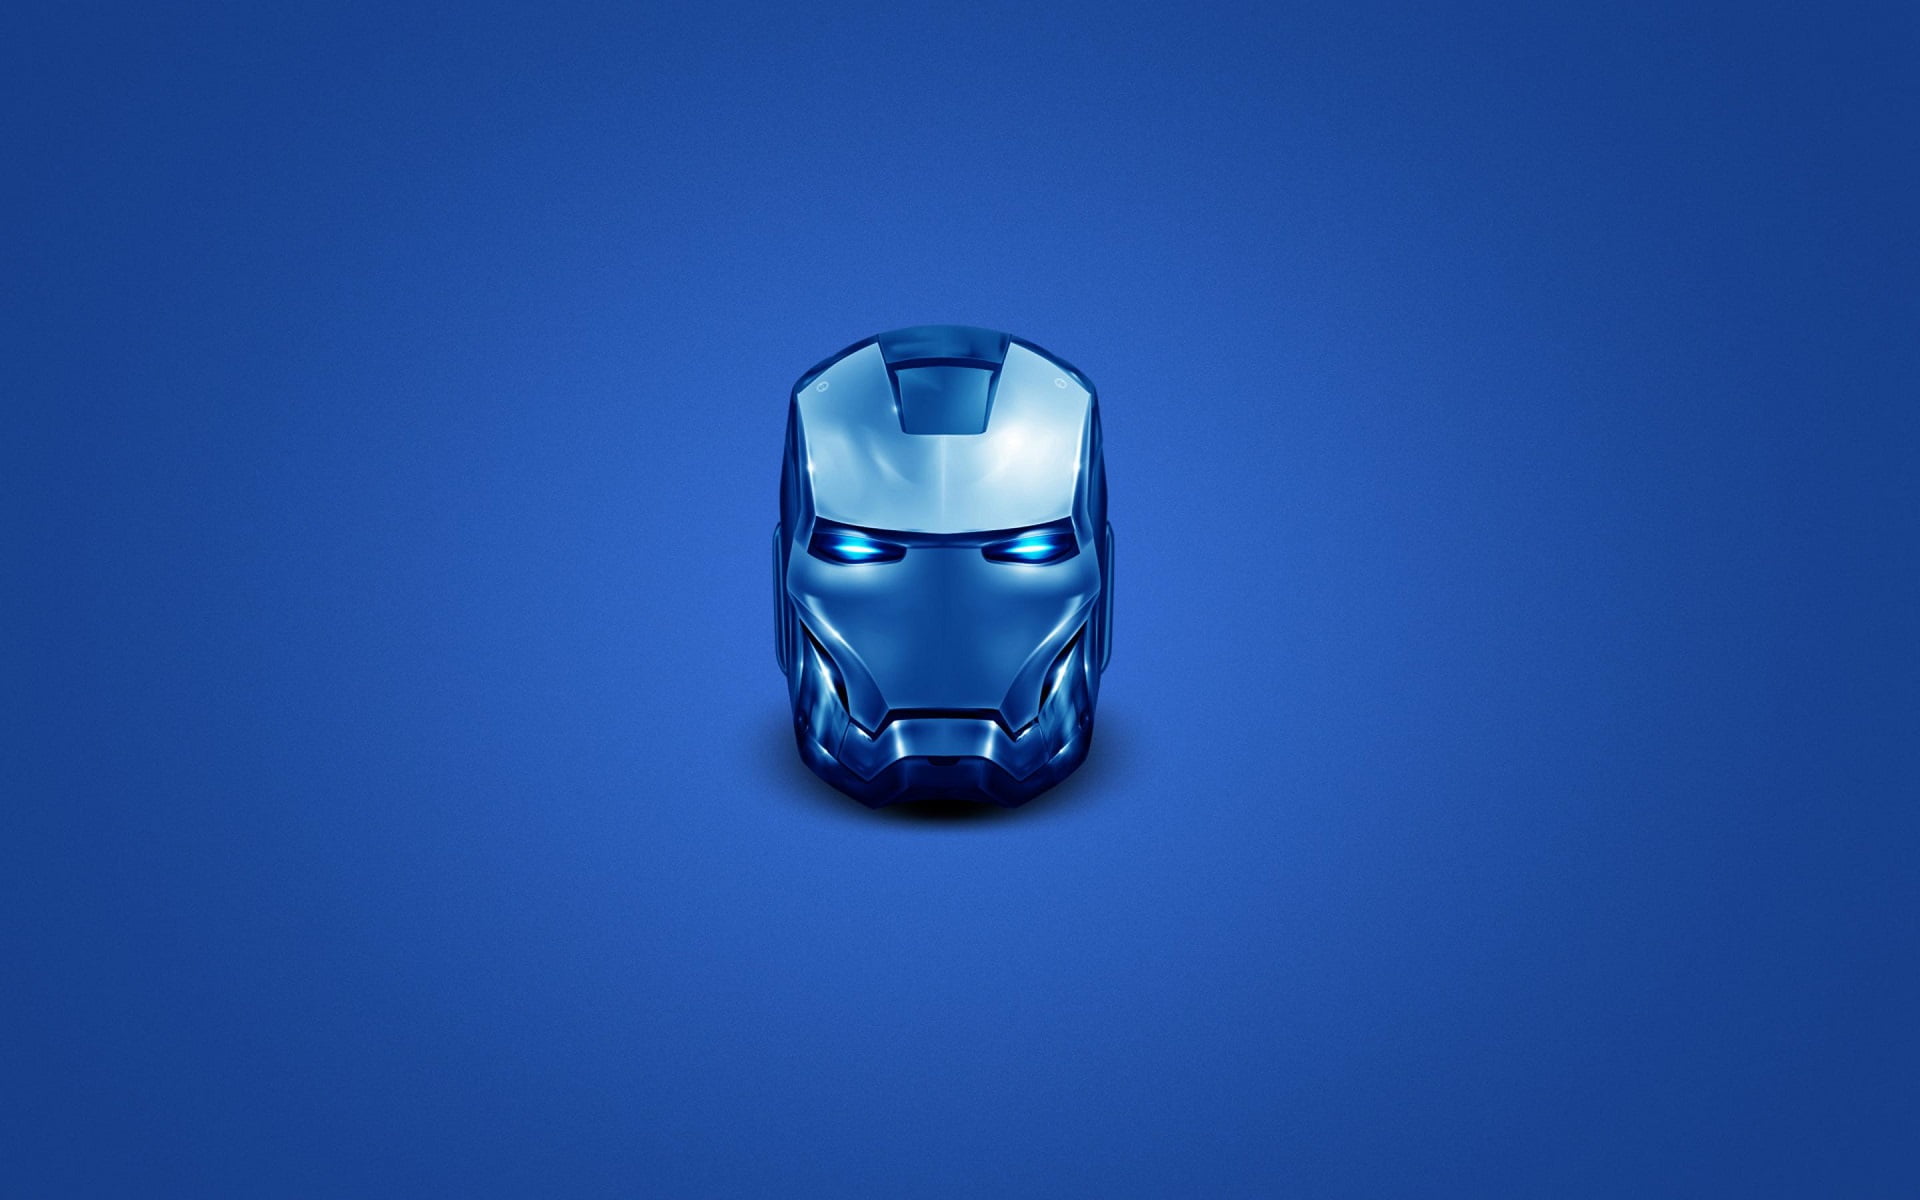 Iron-Man bust illustration, Iron Man, head, helmet, superhero